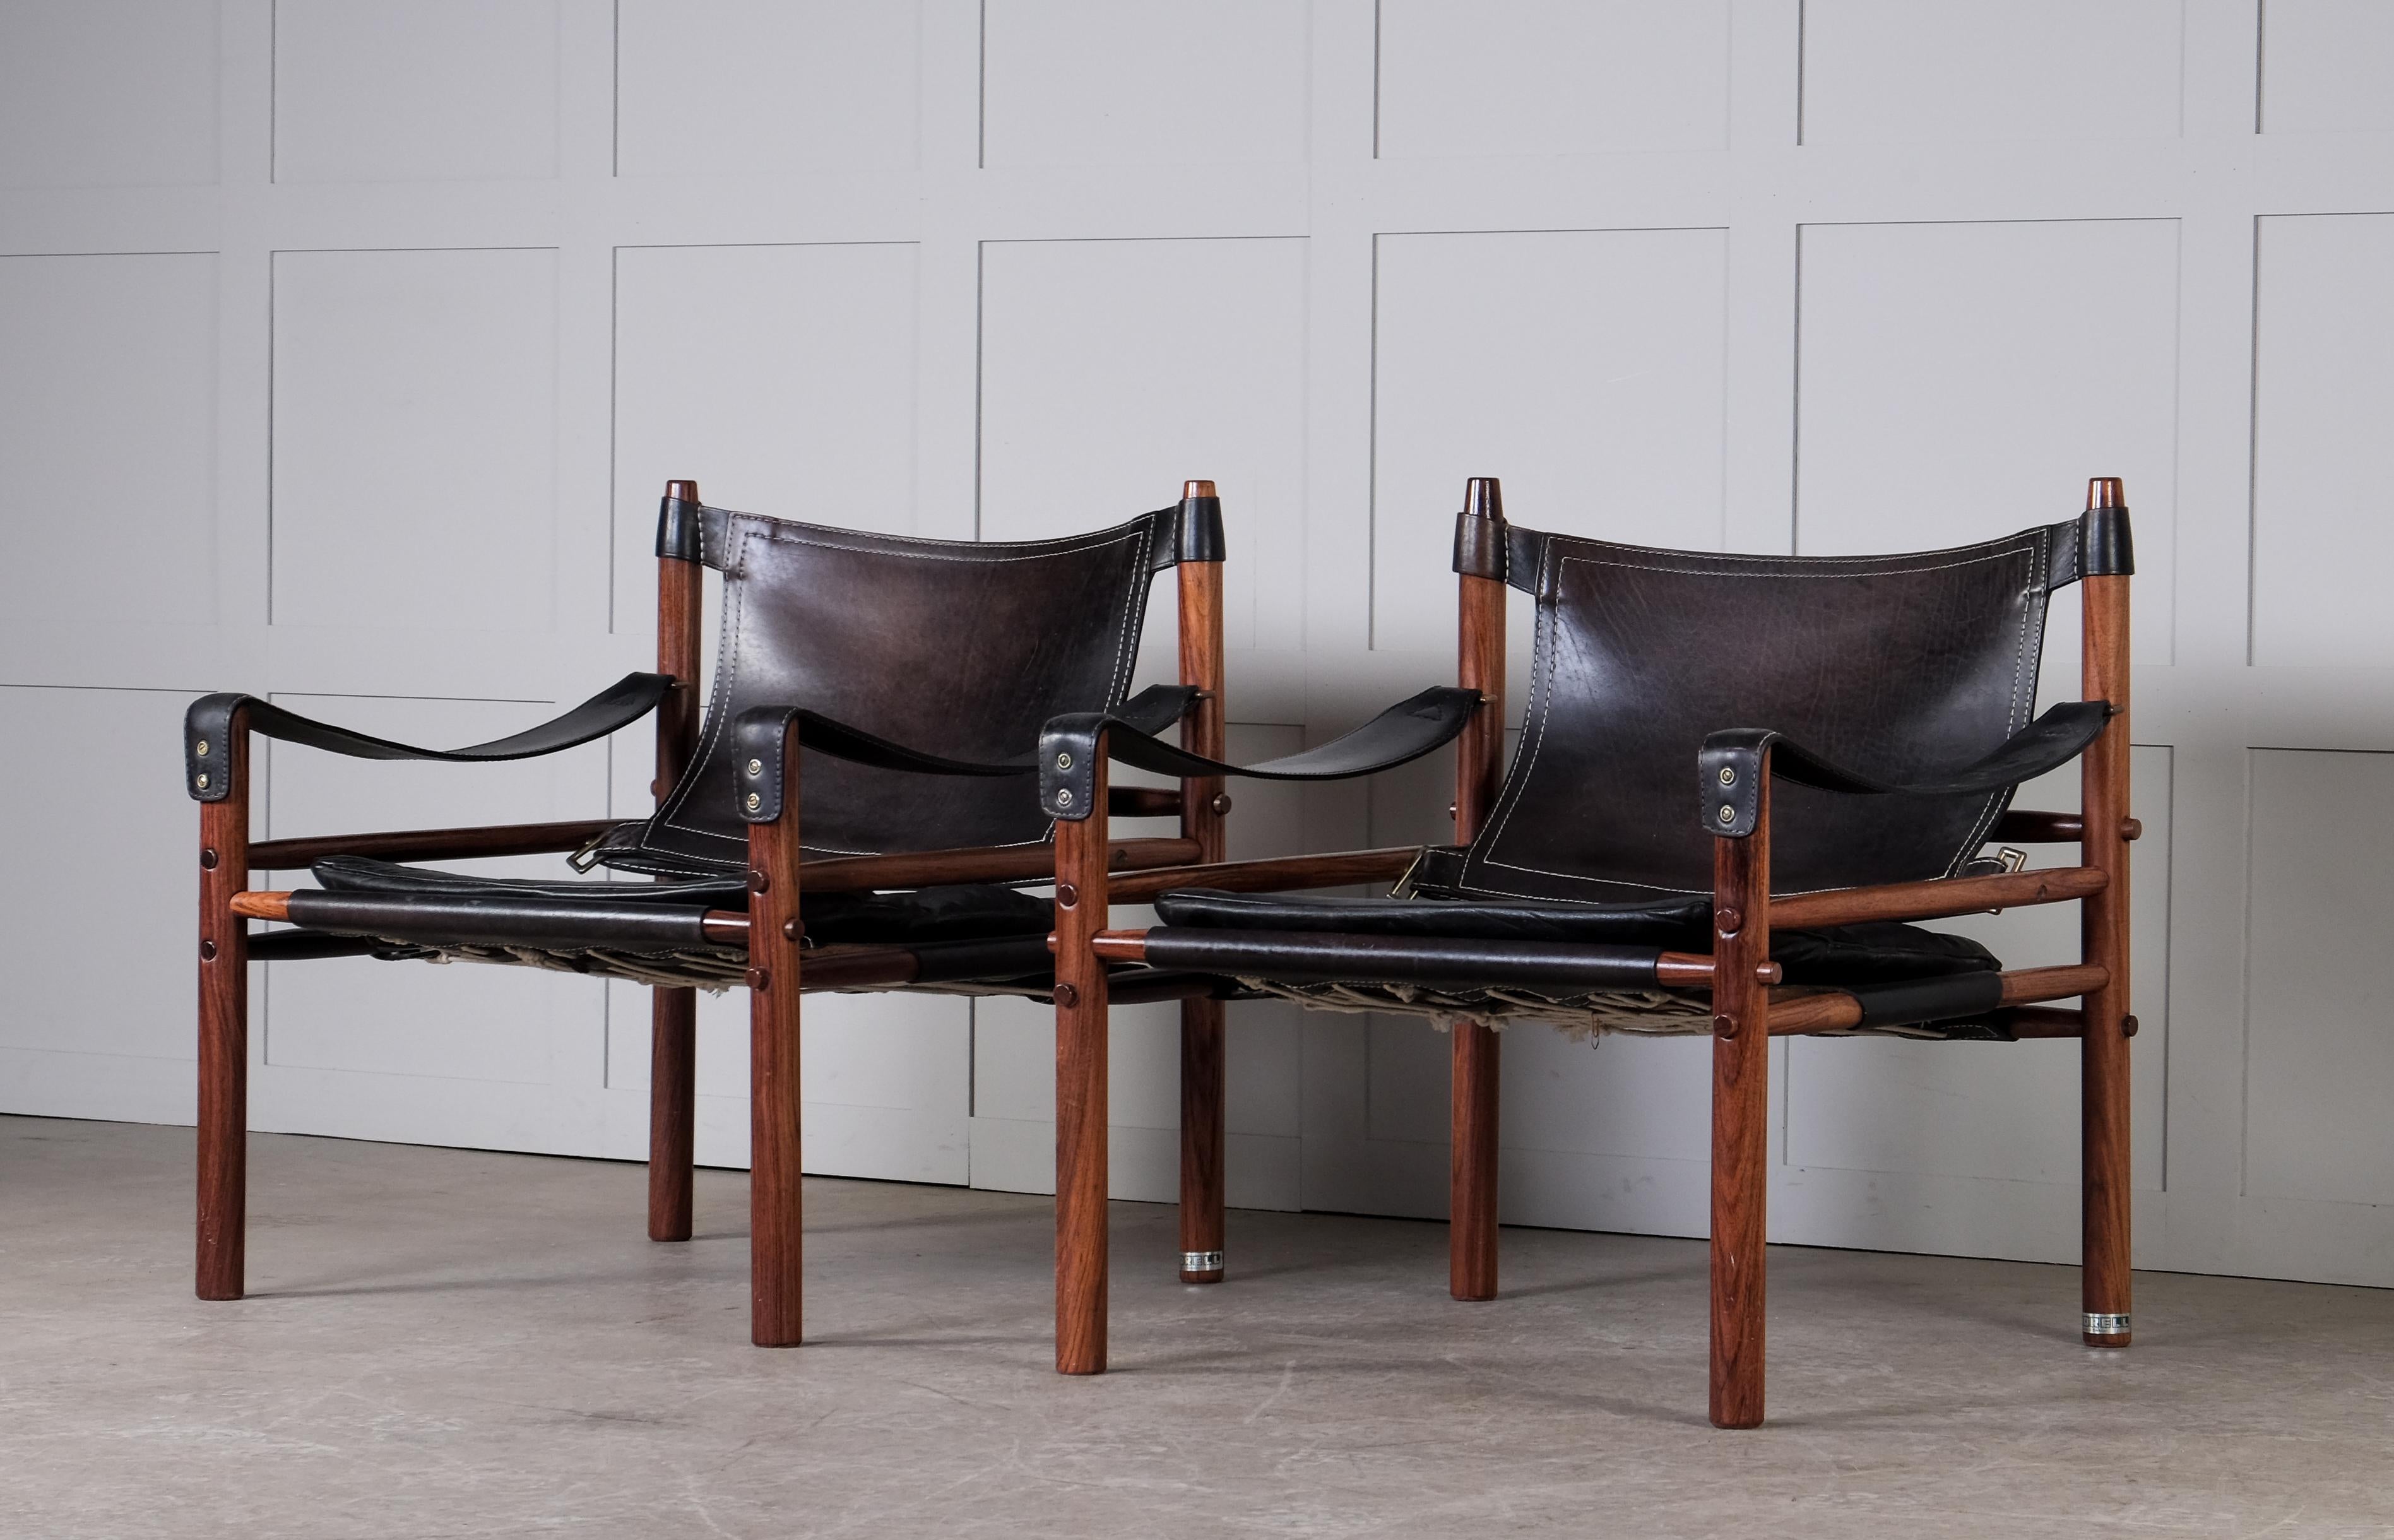 Paire de chaises safari modèle Sirocco en bon état avec cuir noir d'origine.
Conçu par Arne Norell, produit par Arne Norell AB à Aneby, Suède, années 1960.
Expédition mondiale par la porte d'entrée, livraison dans les 10 jours : 600